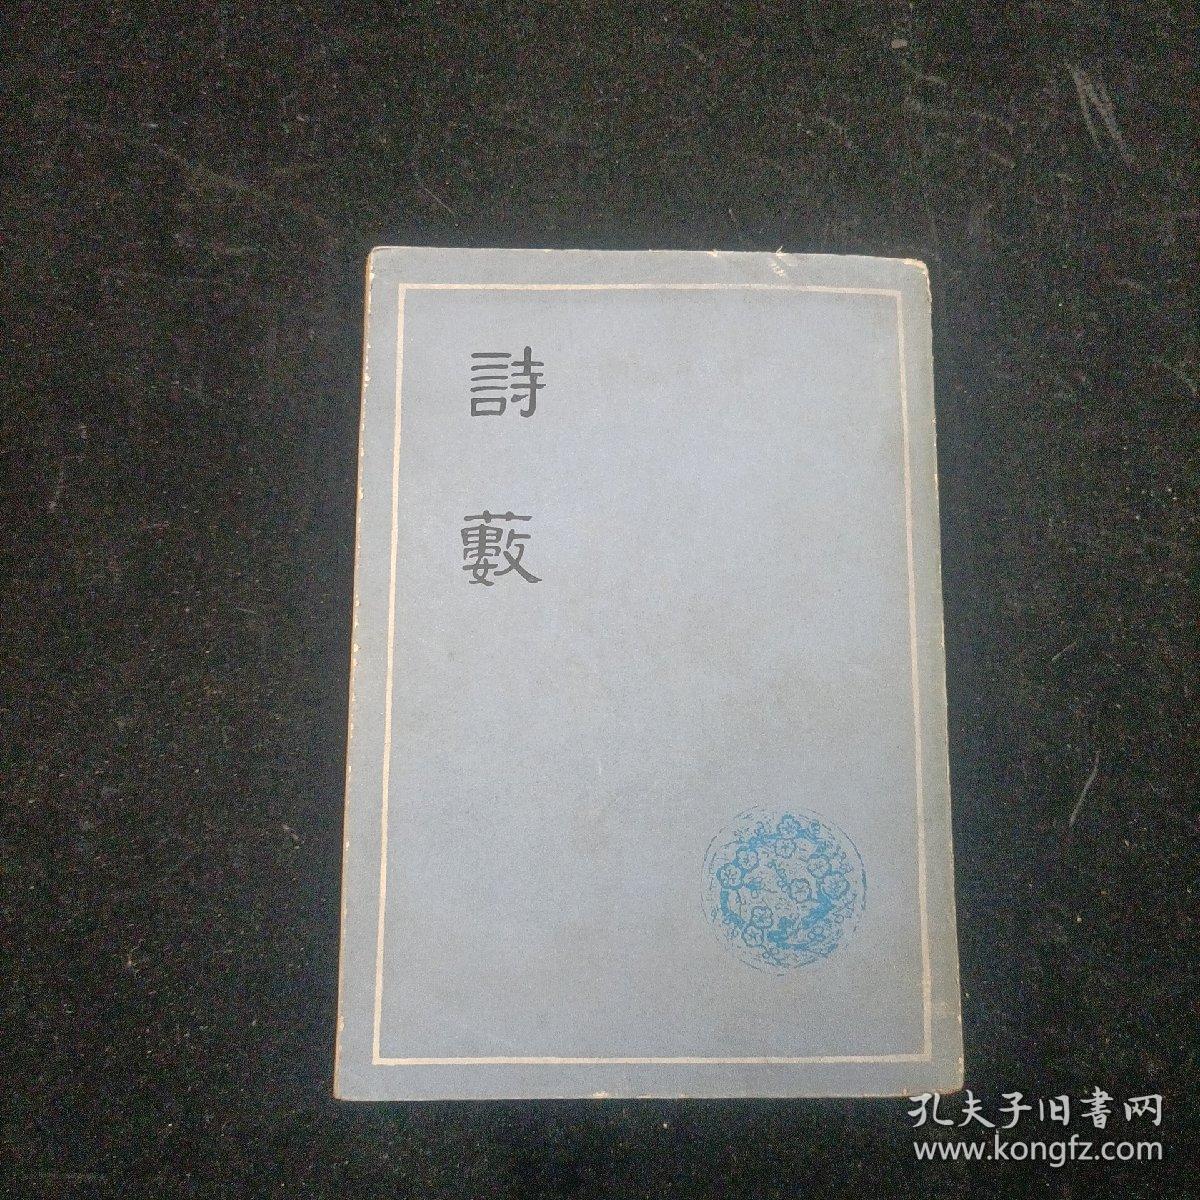 诗薮 胡应麟 上海古籍出版社 1979年一版一印 竖版本